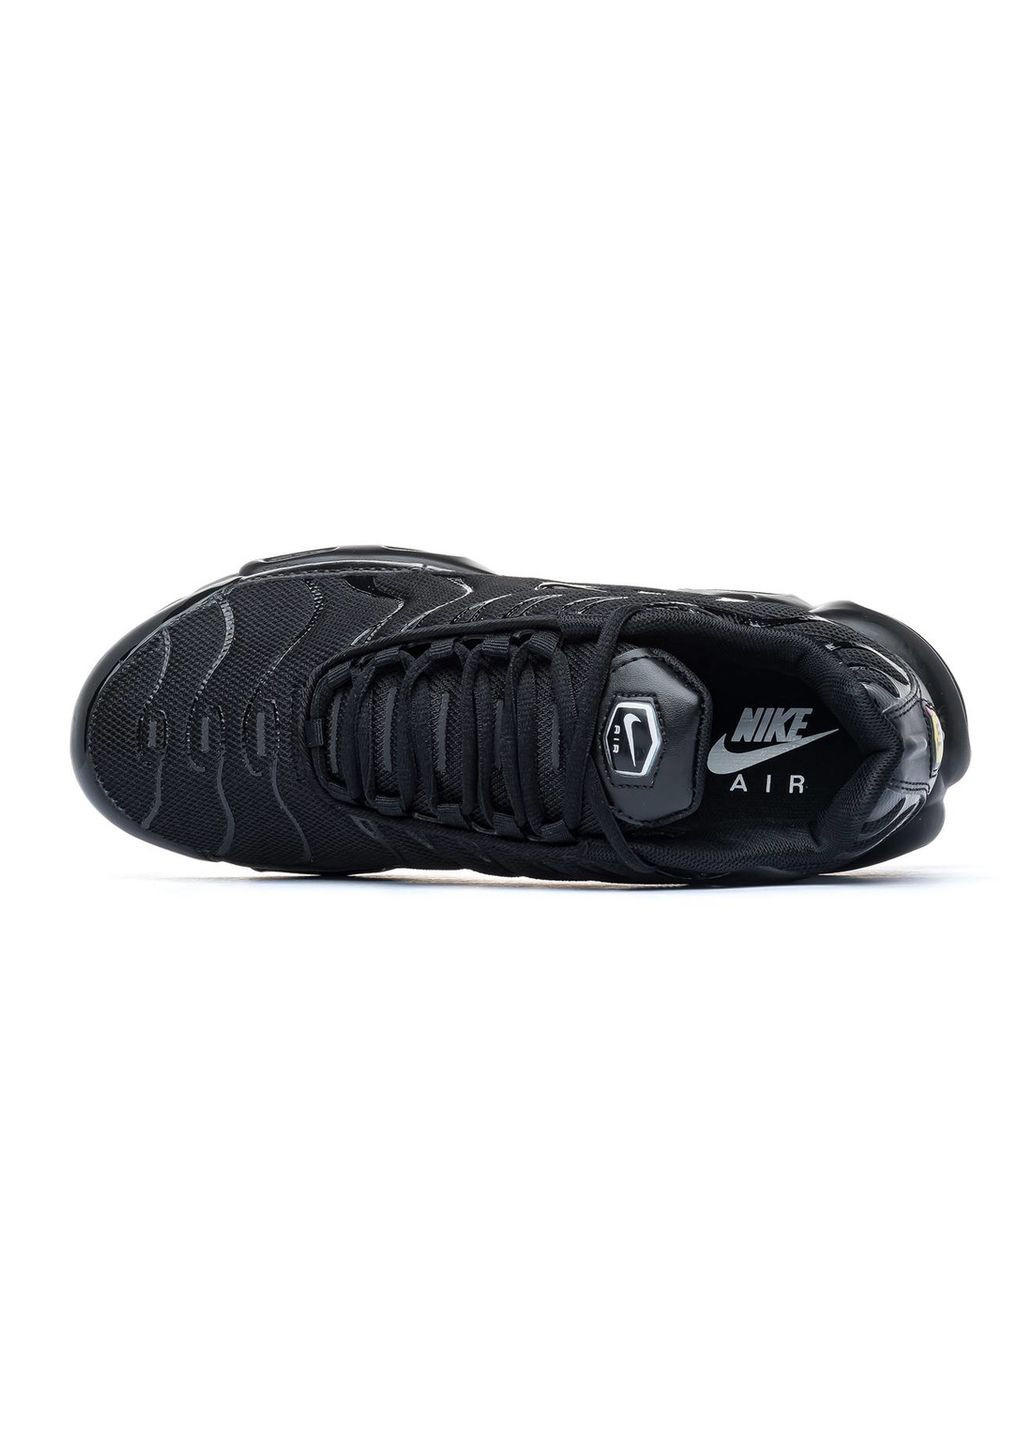 Черные демисезонные кроссовки мужские air max black, вьетнам Nike TN Plus